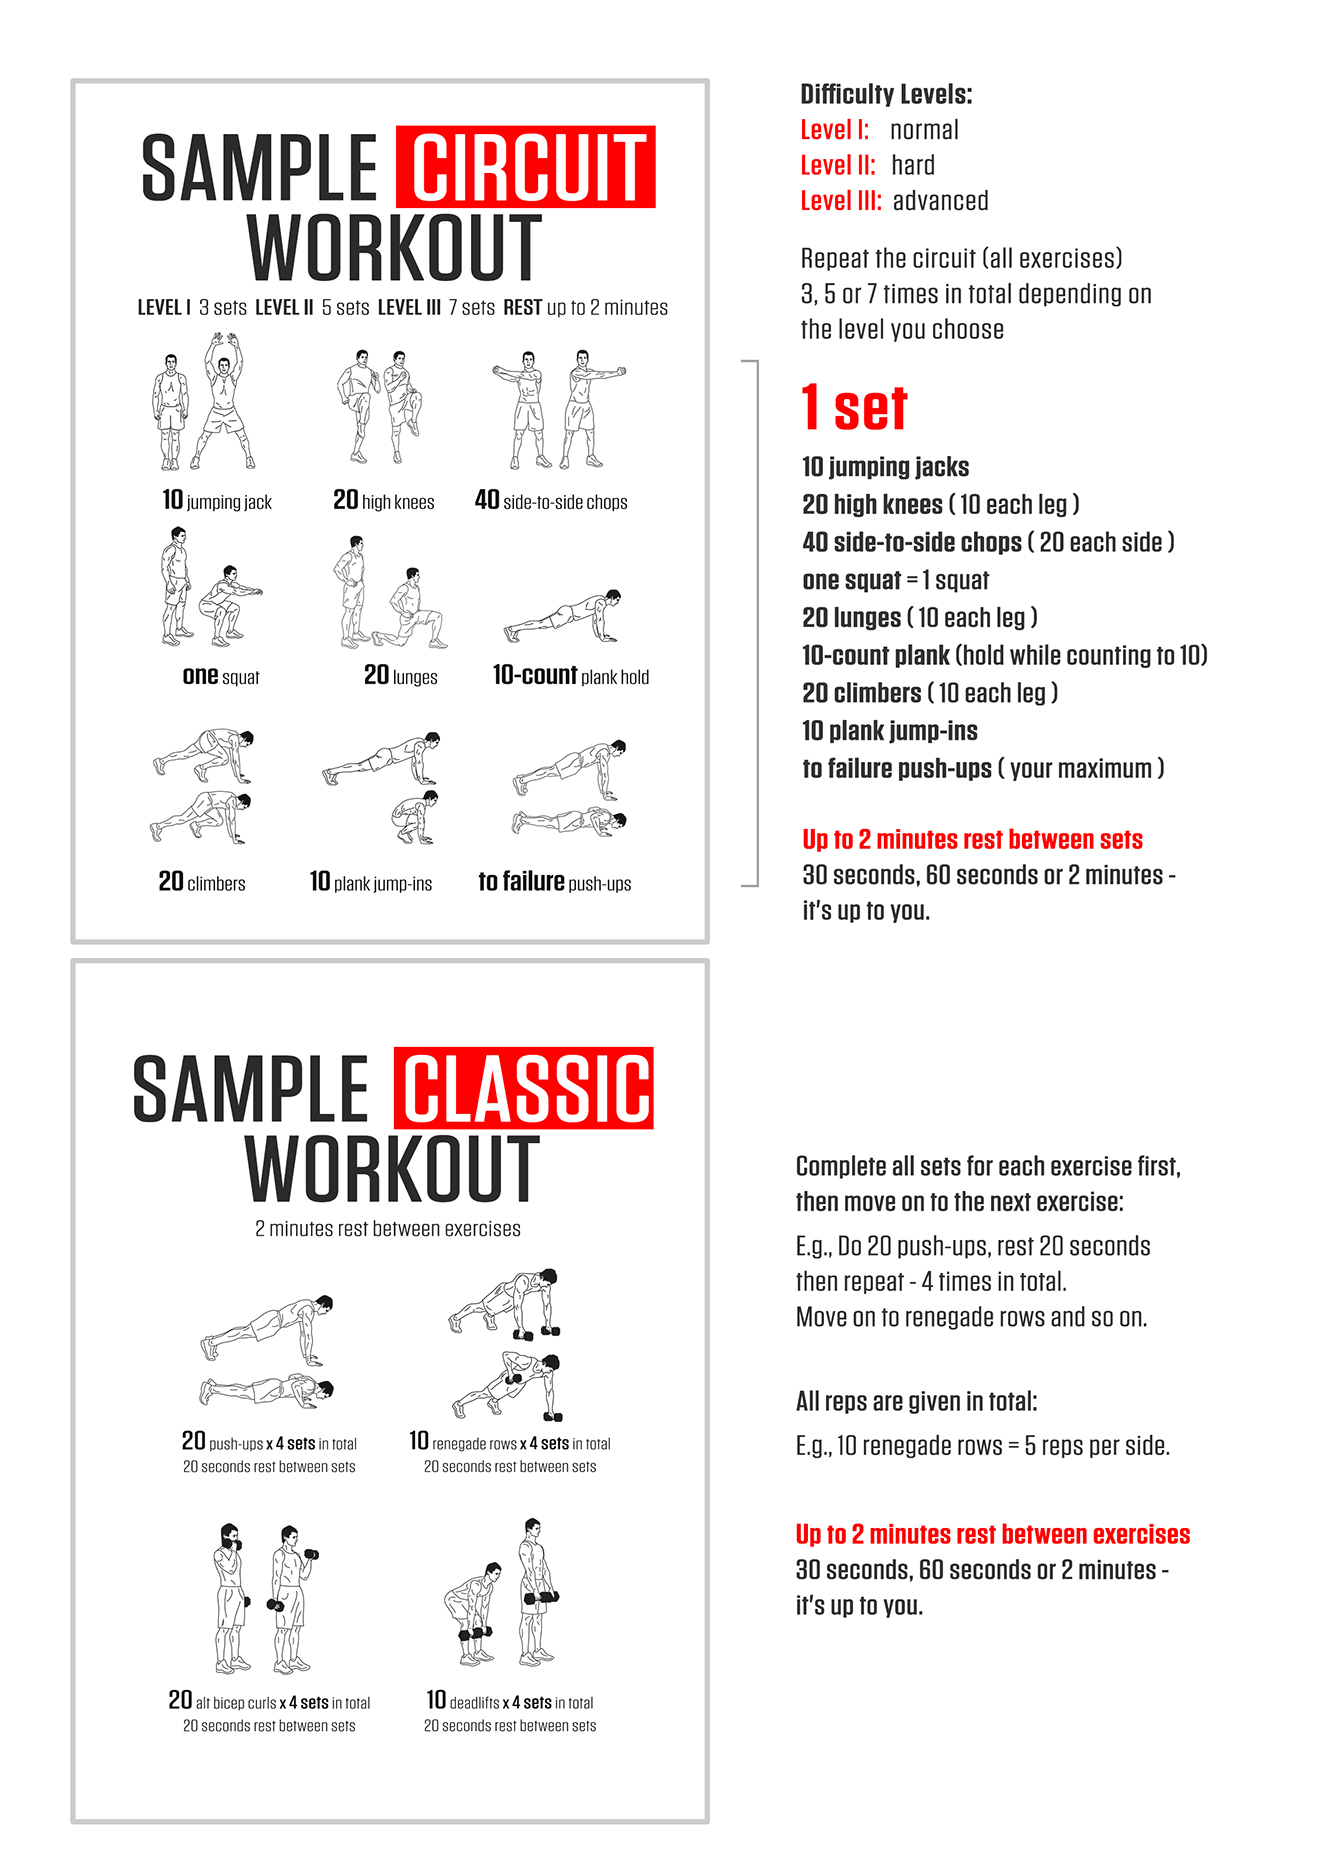 DAREBEE Workout Manual